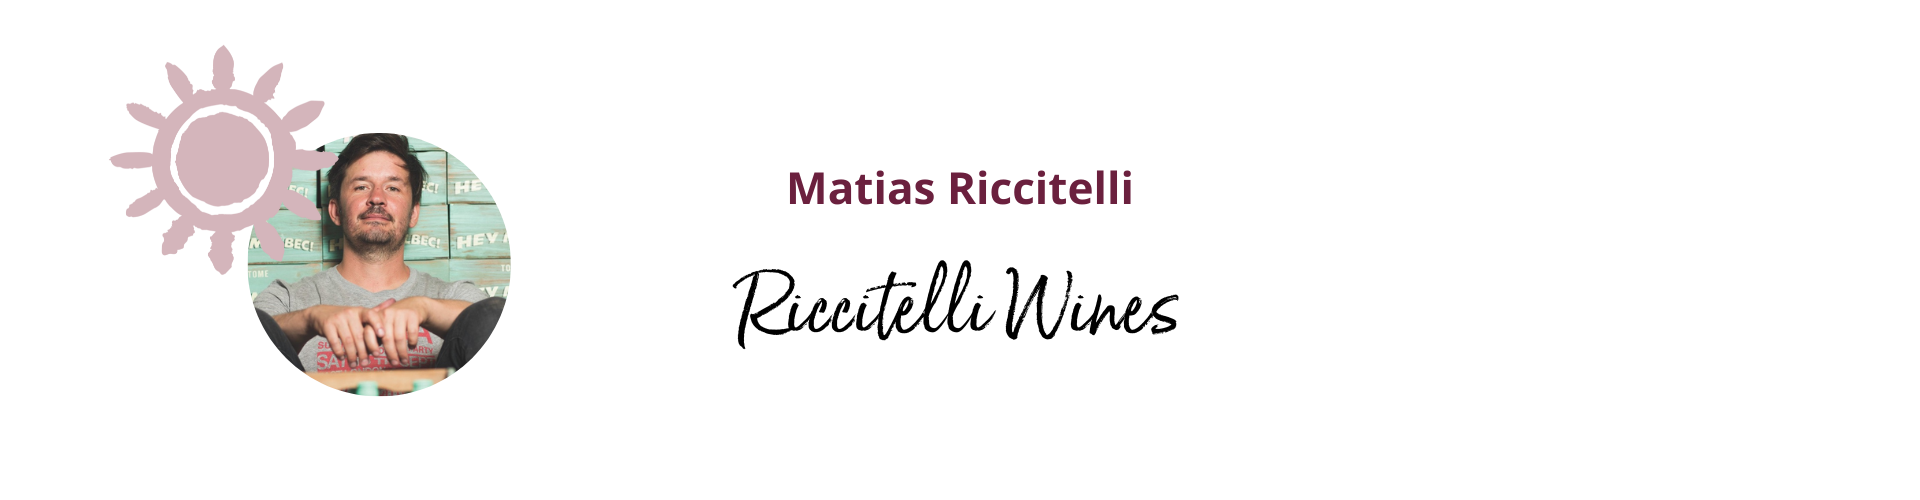 Matias Riccitelli - Riccitelli Wines